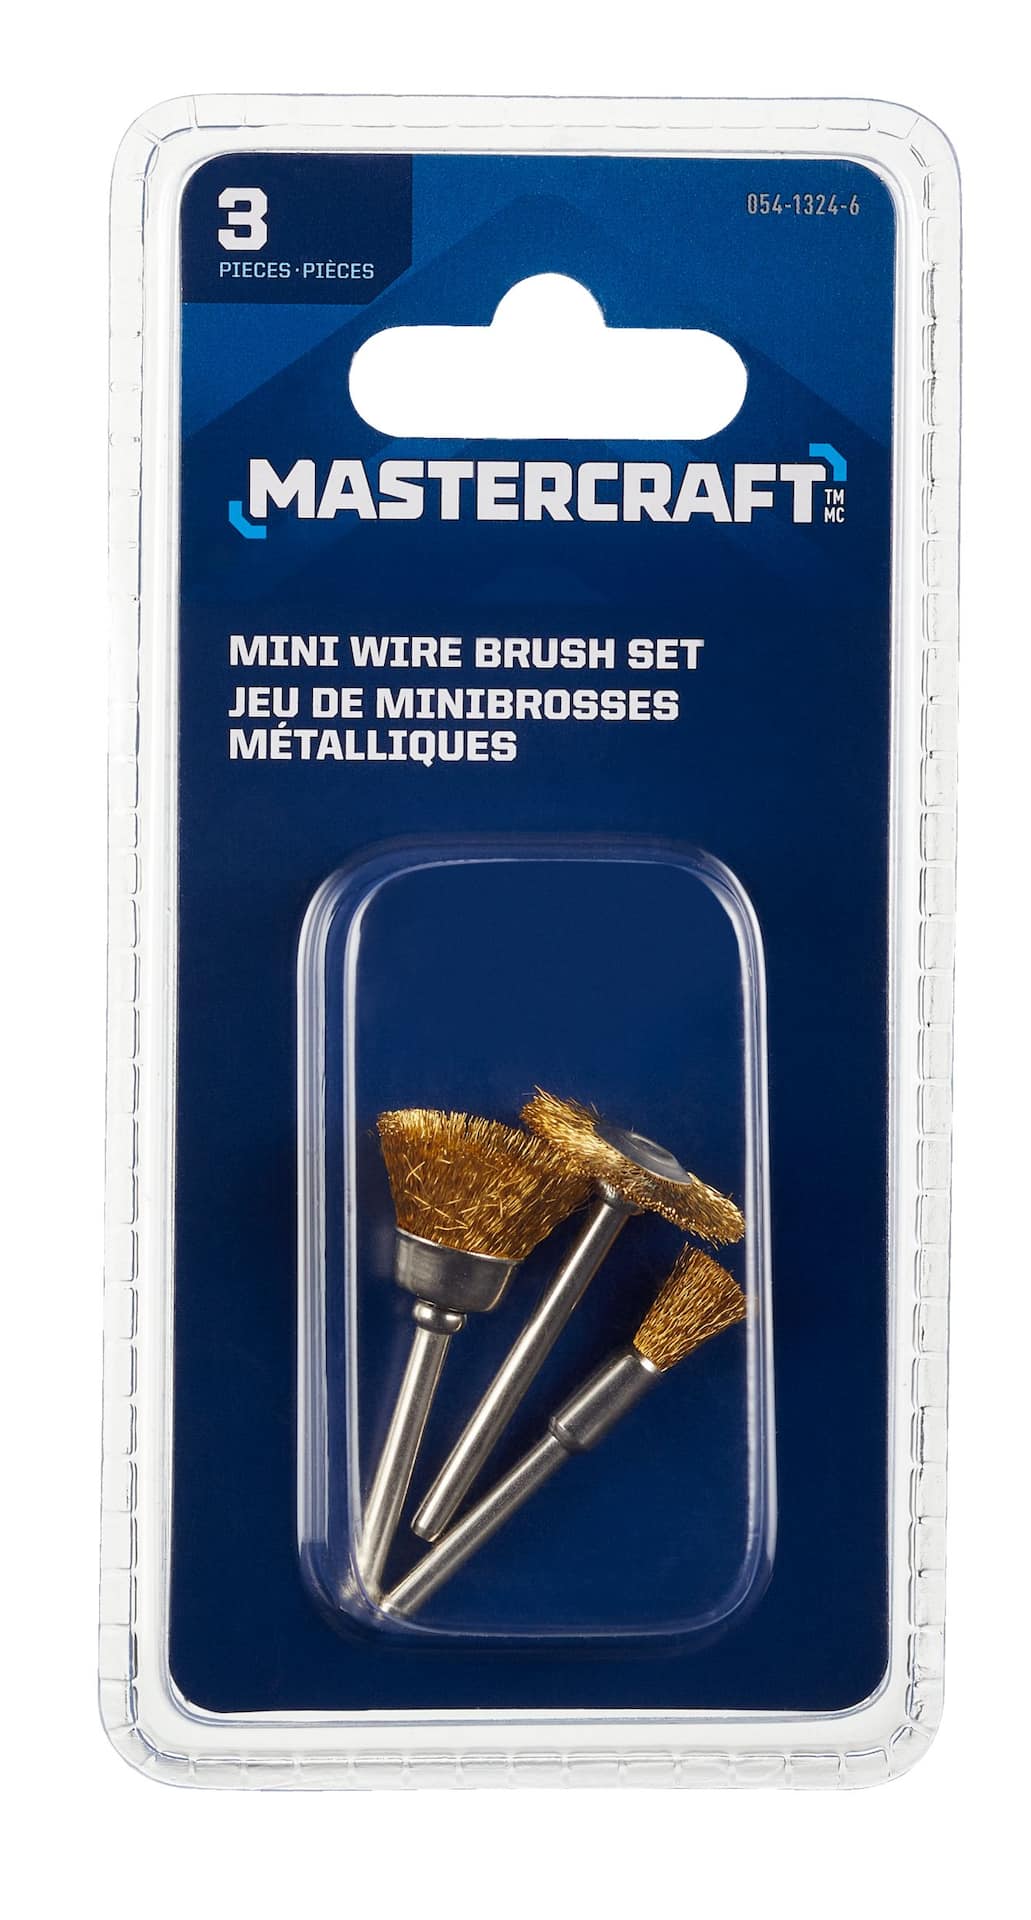 3 piece brass wire brush set